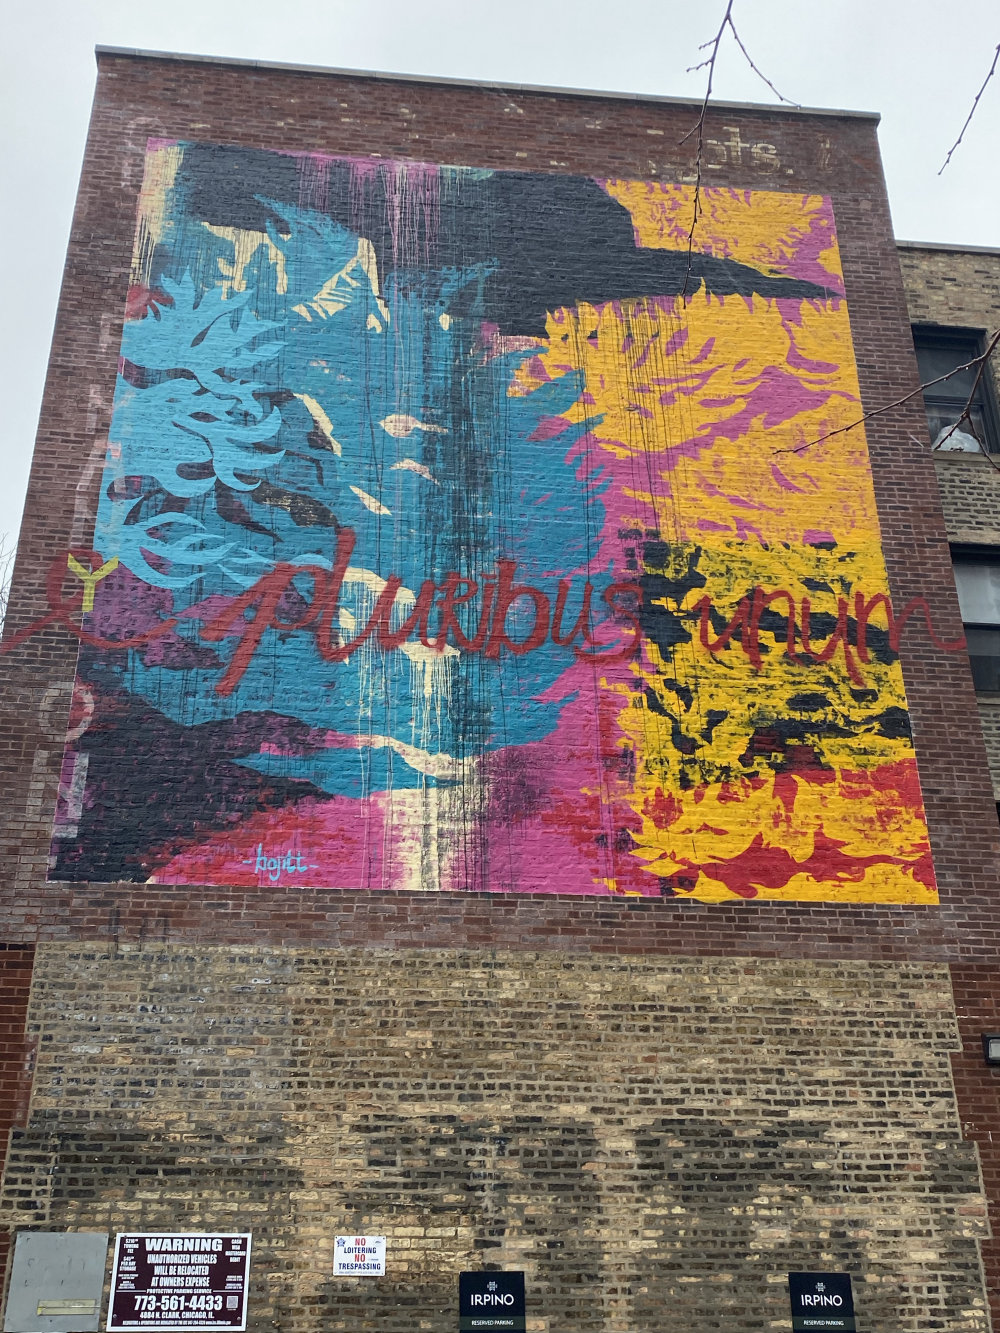 mural in Chicago by artist BOJITT.